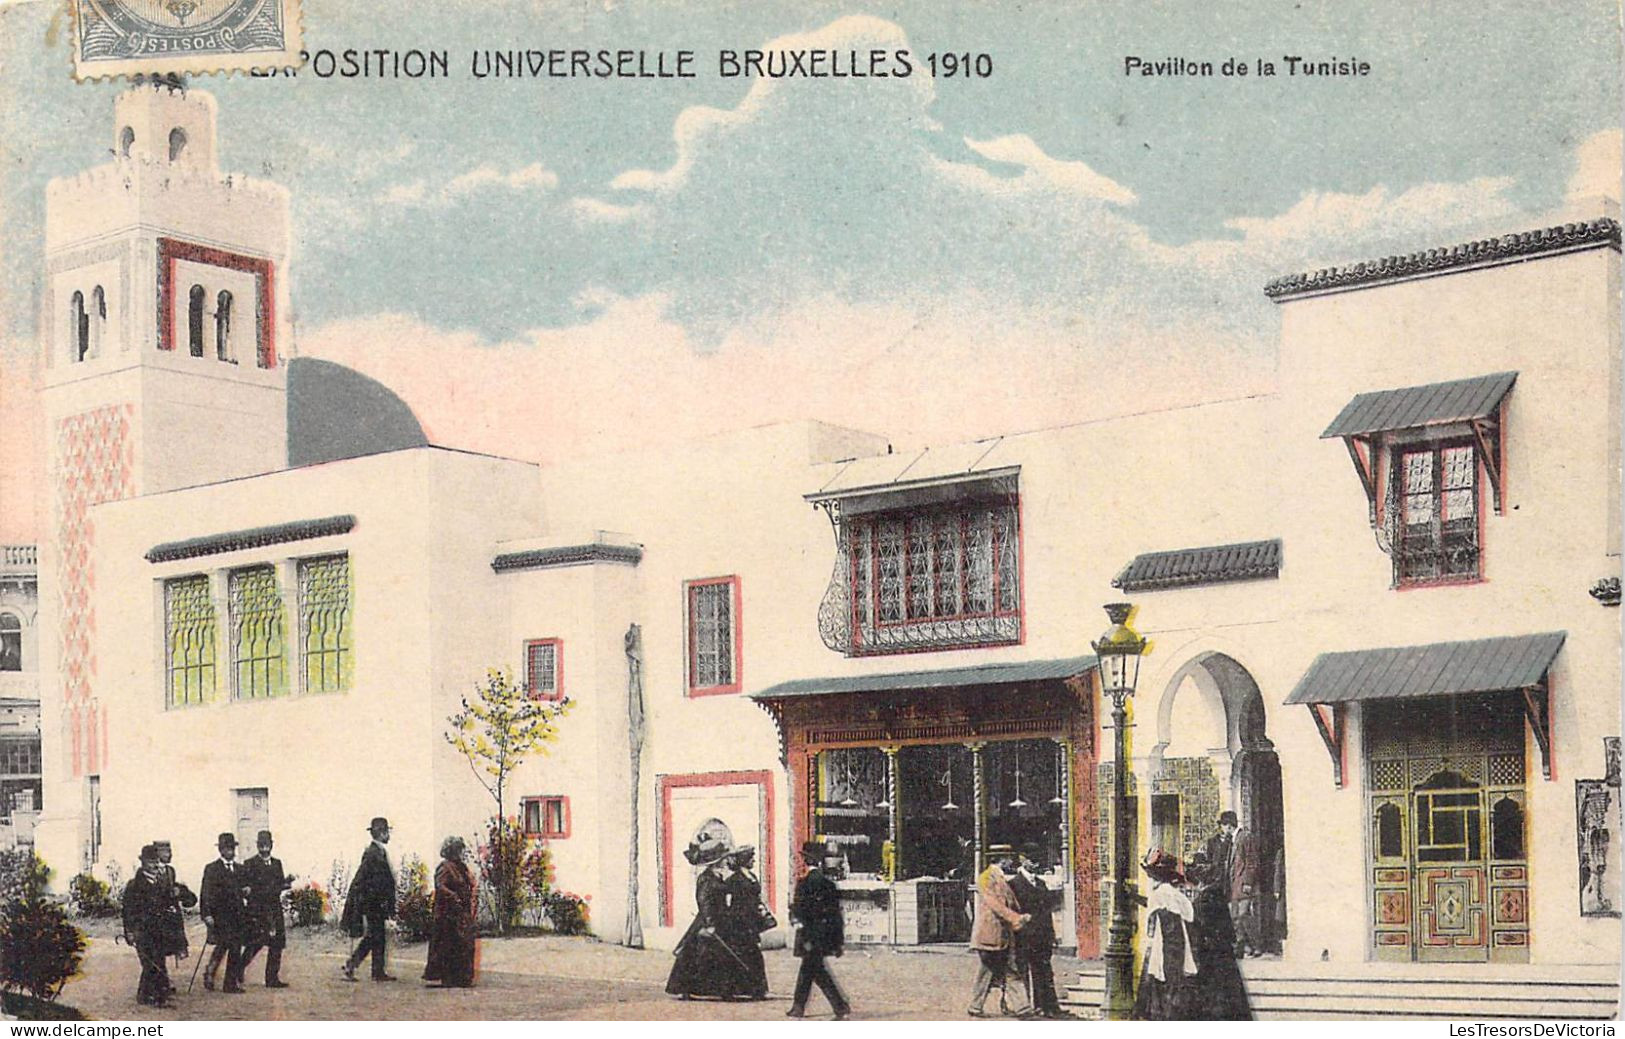 BELGIQUE - BRUXELLES Exposition Bruxelles 1910 - Pavillon De La Tunisie - Carte Postale Ancienne - Expositions Universelles